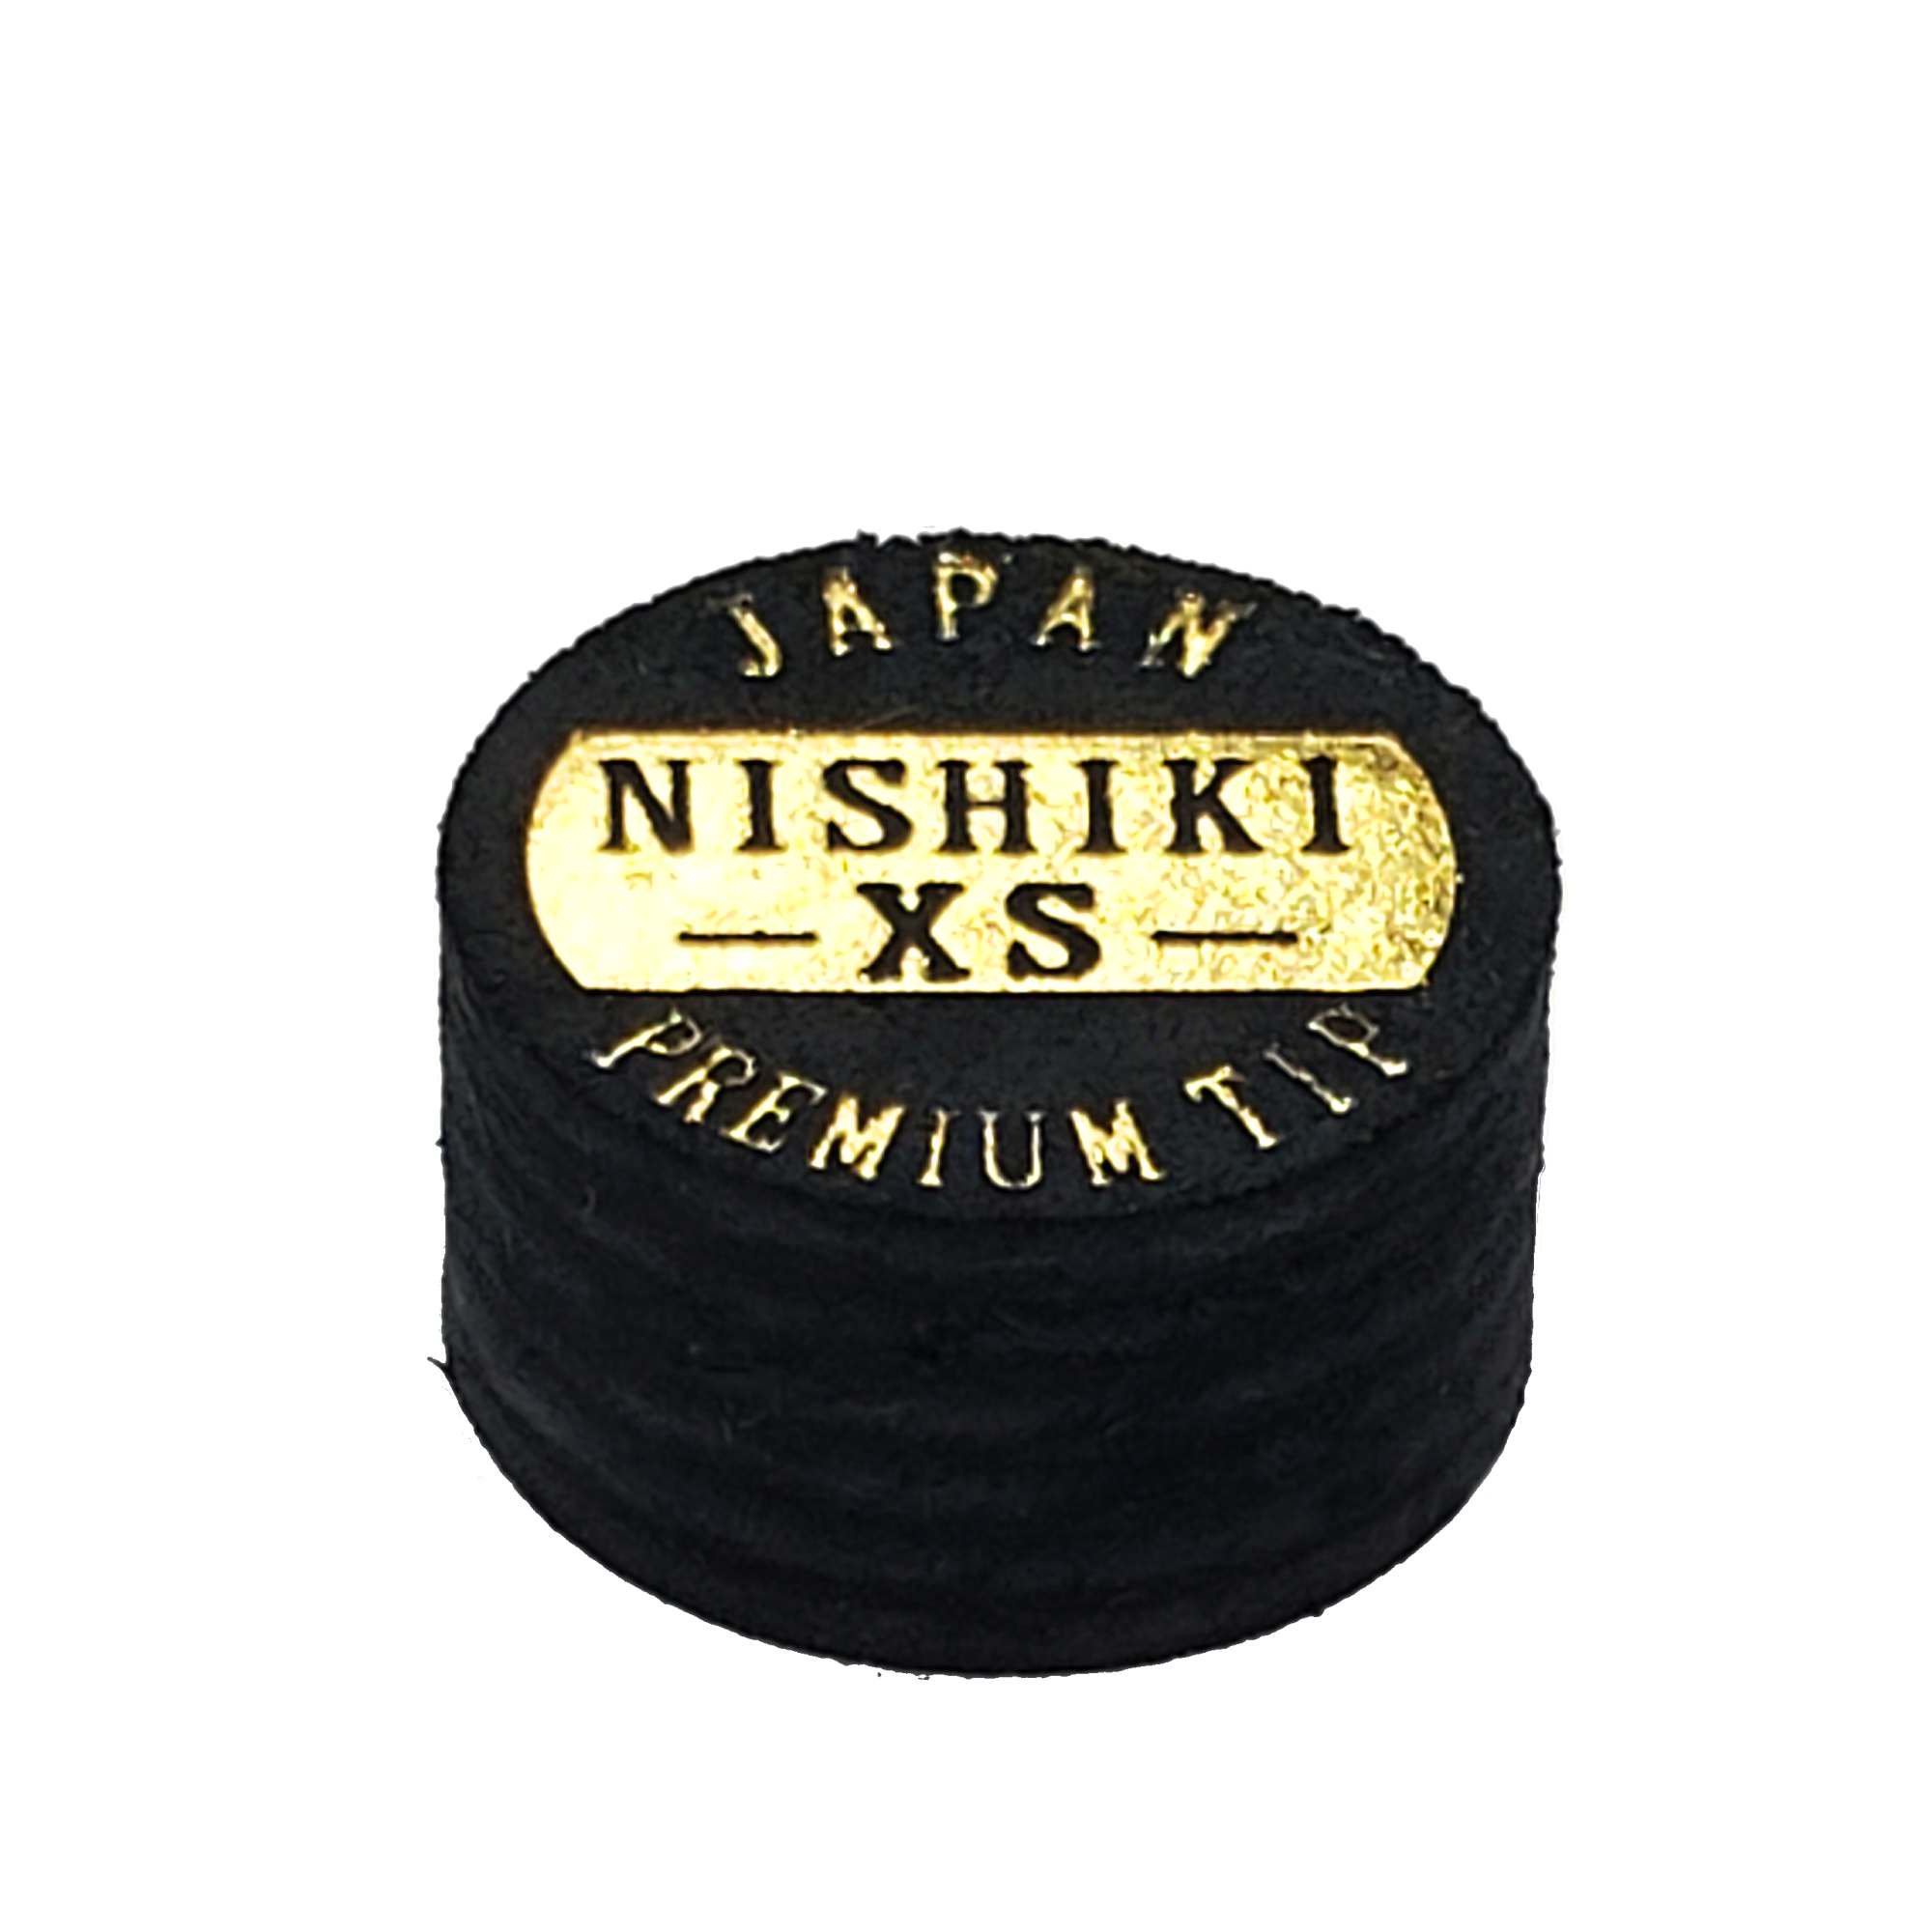 NISHIKI 錦タップ XS